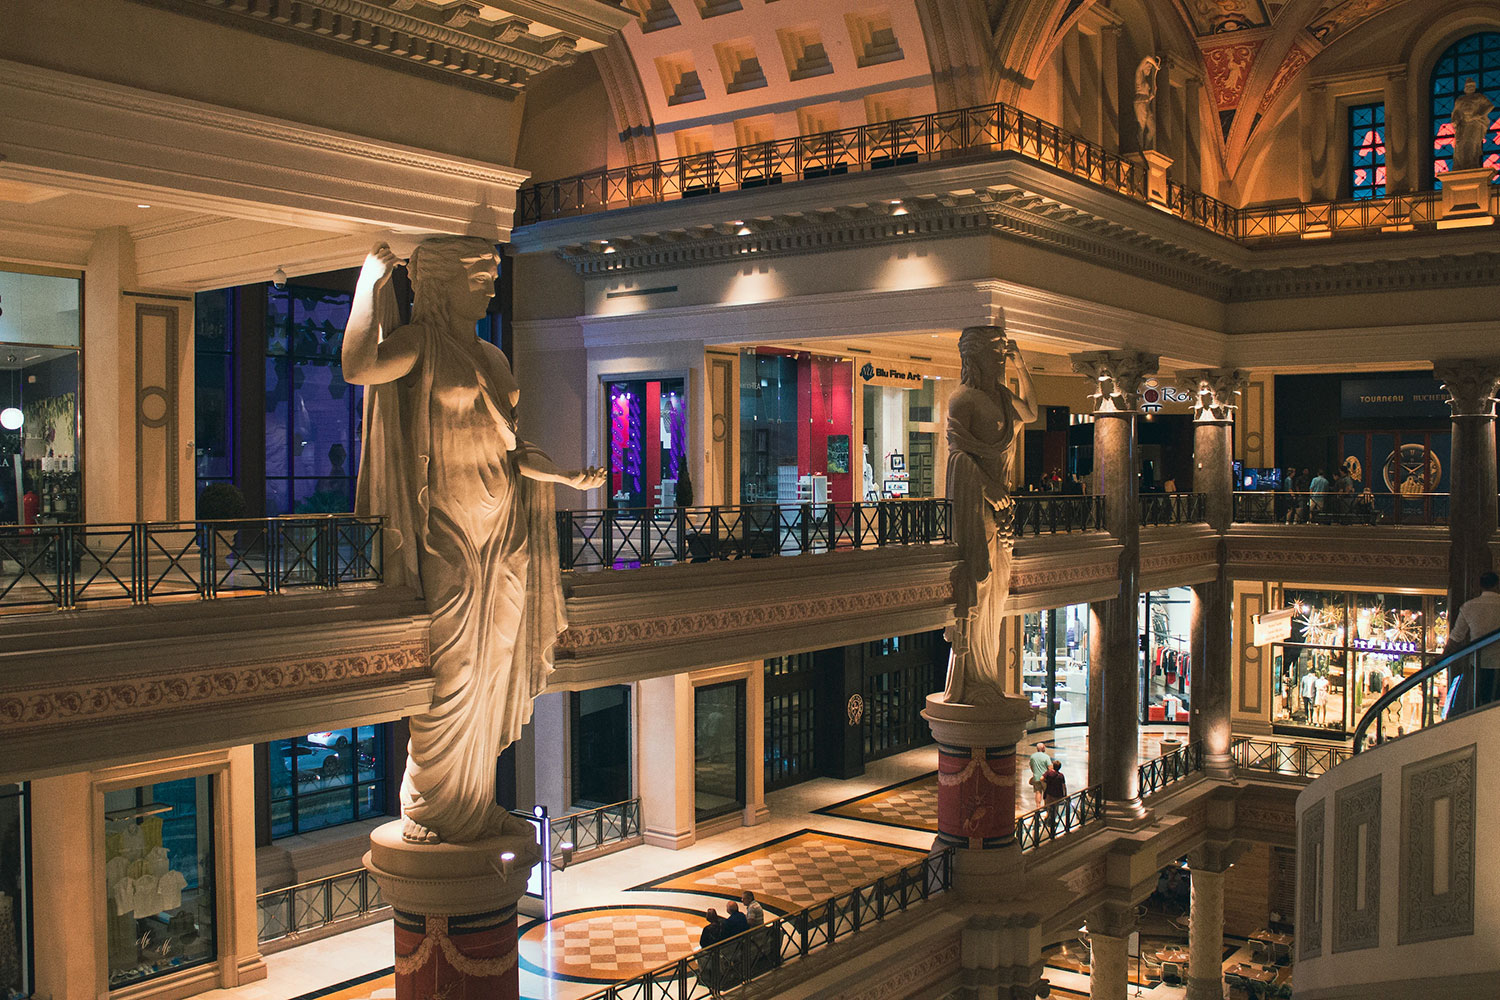 Caesars Palace a Las Vegas ha pagato milioni di dollari per impedire la diffusione di dati rubati